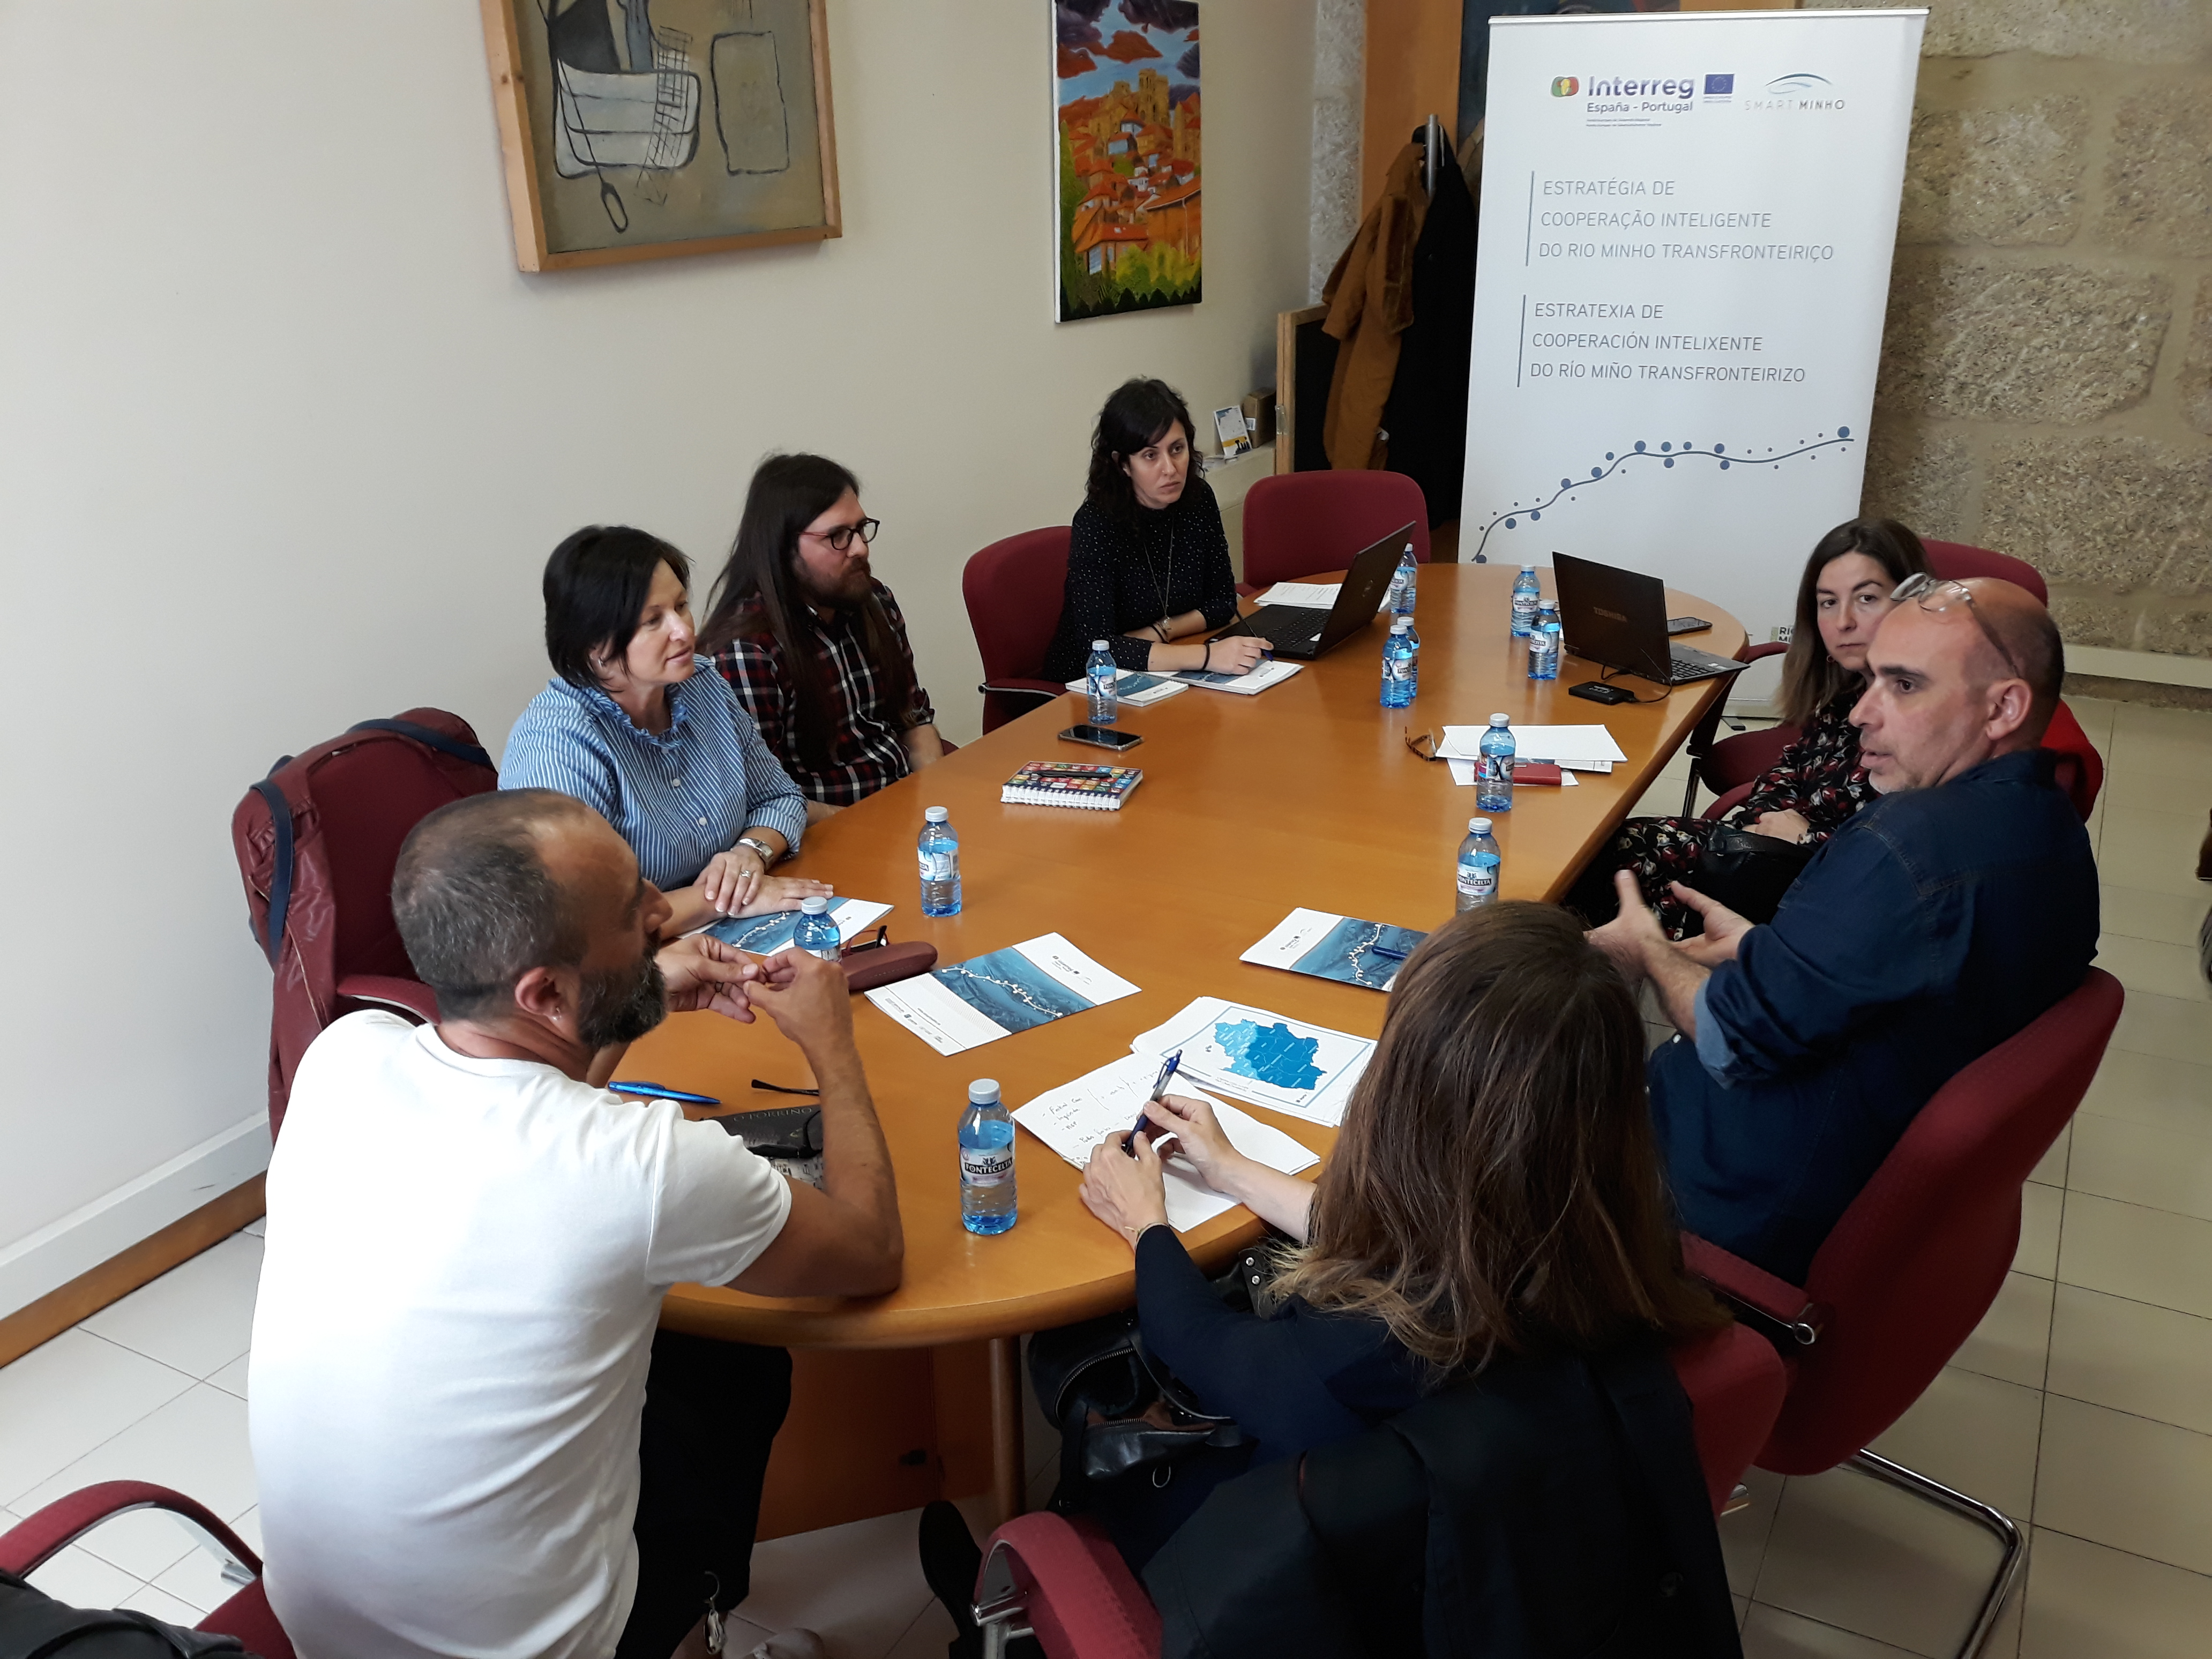 Reunión con técnicos de cultura municipais da marxe galega do territorio do Río Miño